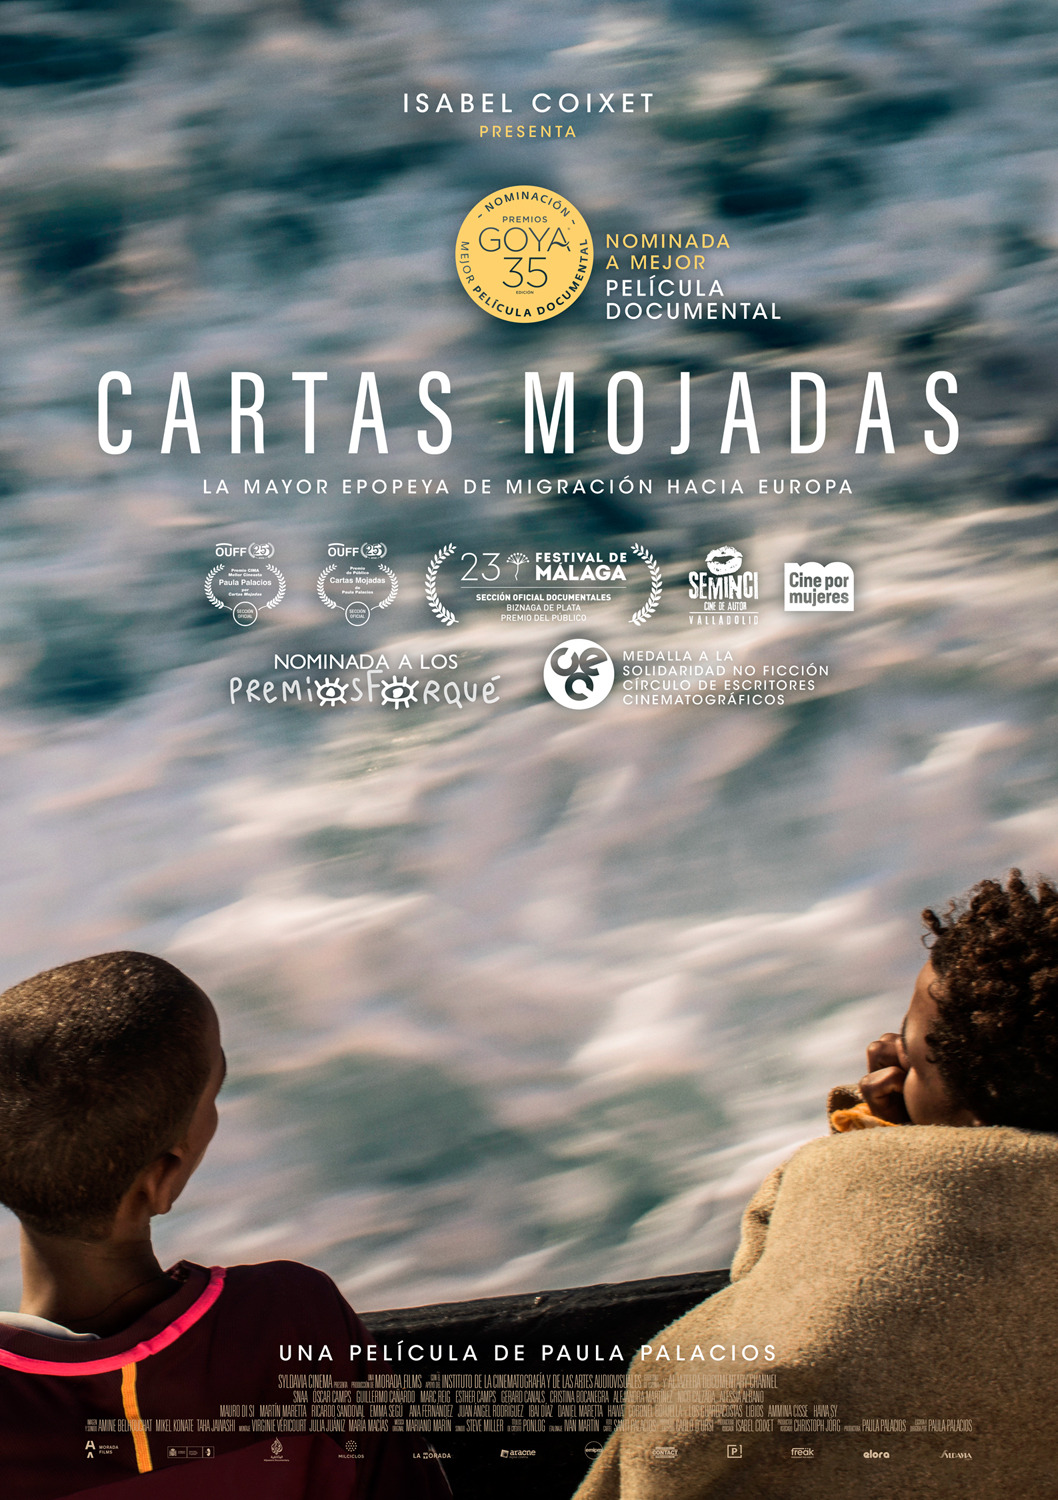 Extra Large Movie Poster Image for Cartas mojadas (#1 of 2)